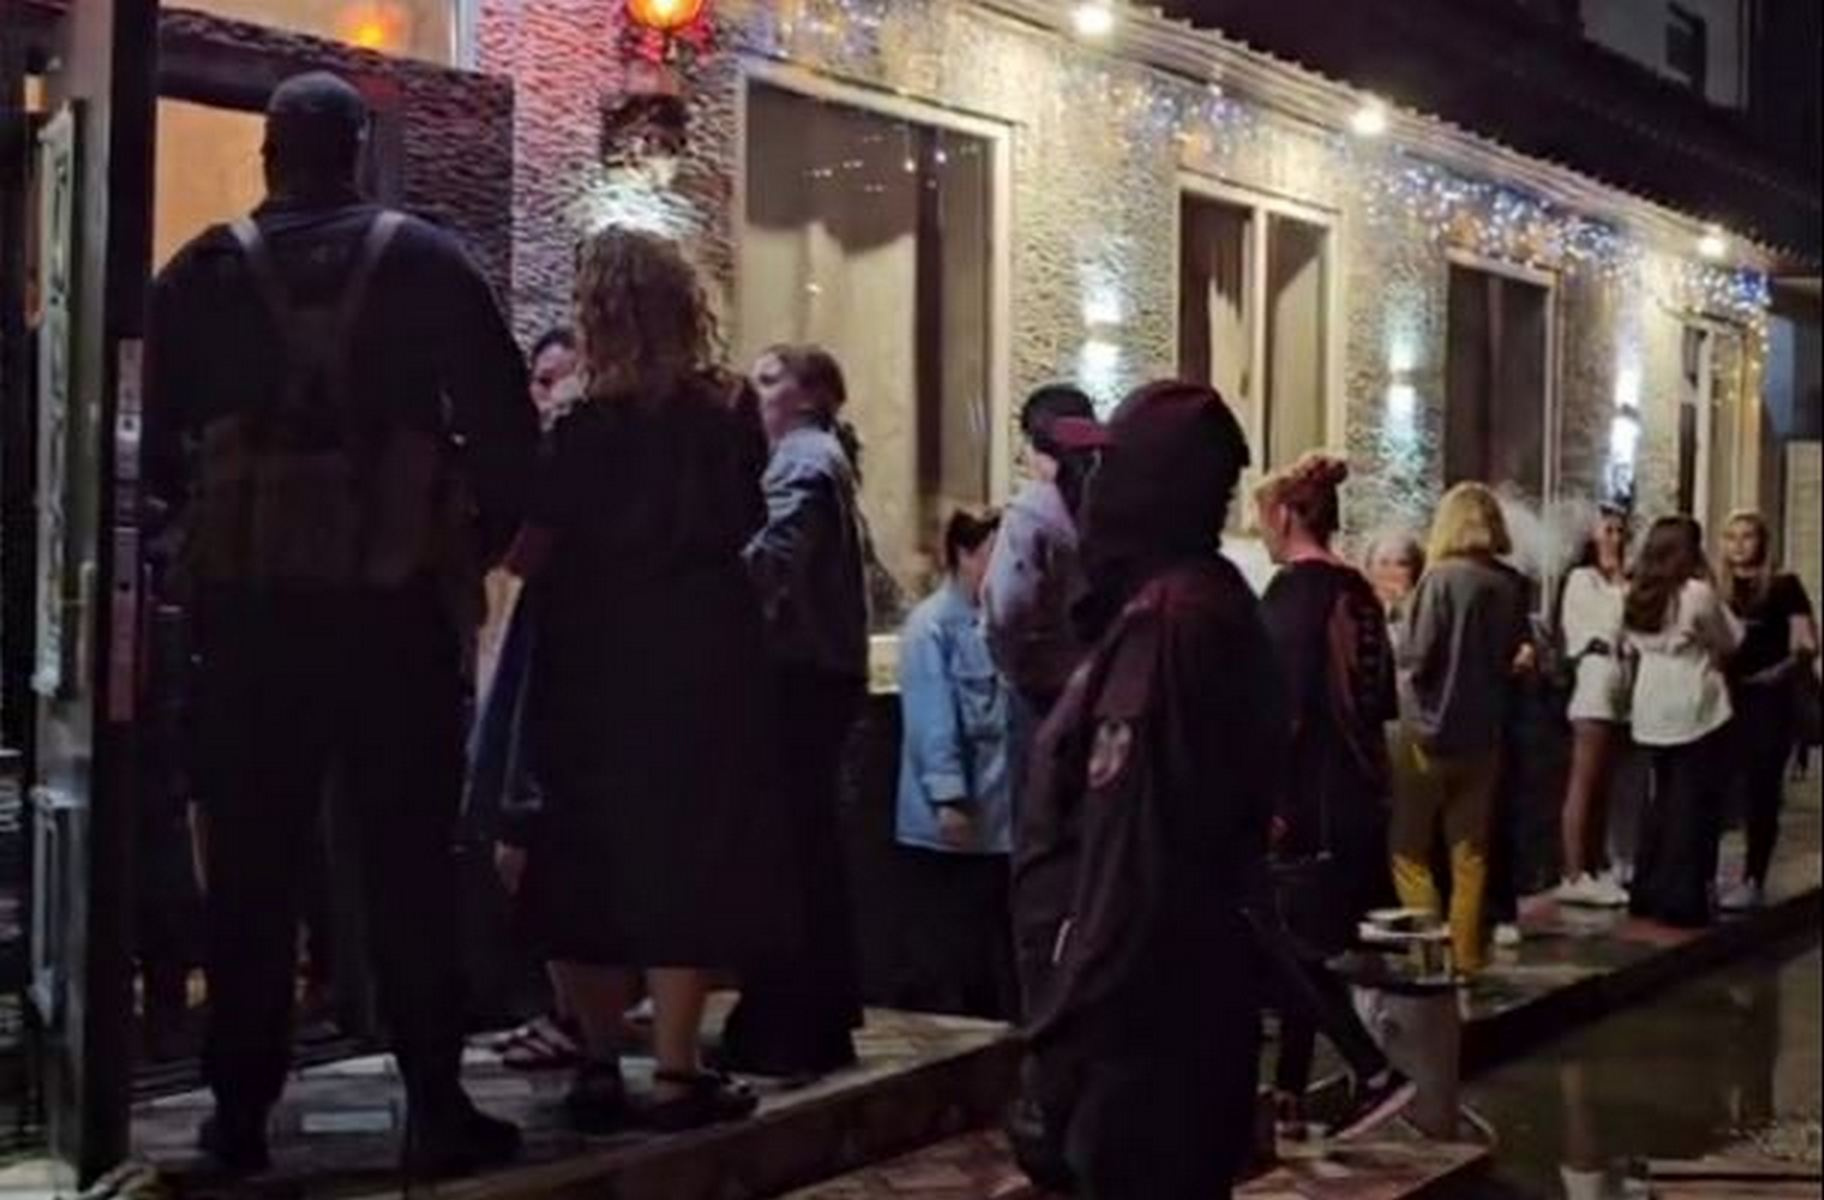 «Всем плохо, люди кашляют». В Екатеринбурге посреди ночи силовики нагрянули в большой ресторан